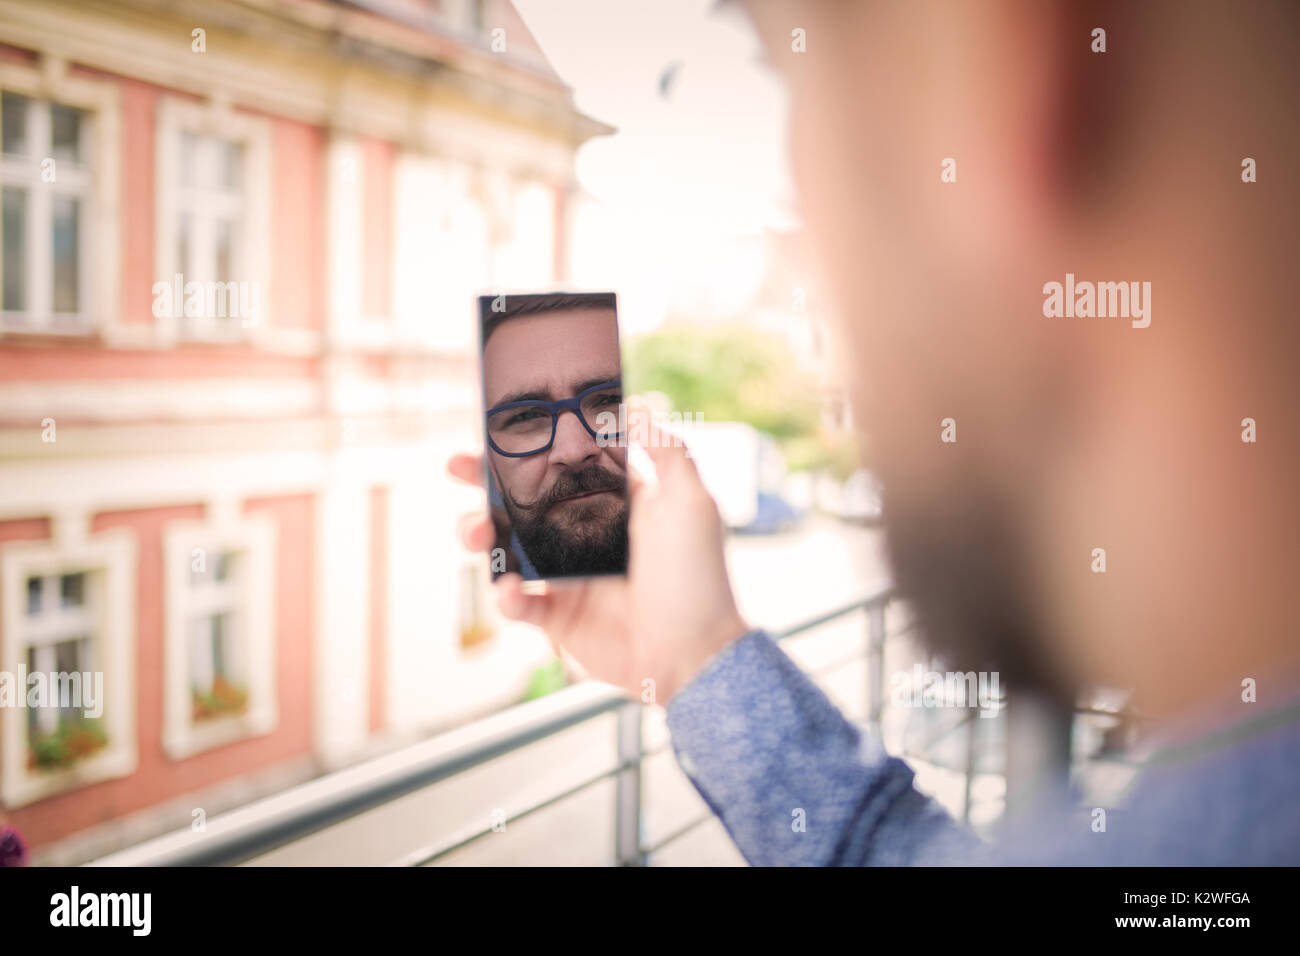 La riflessione di un uomo il suo volto nel telefono cellulare Foto Stock